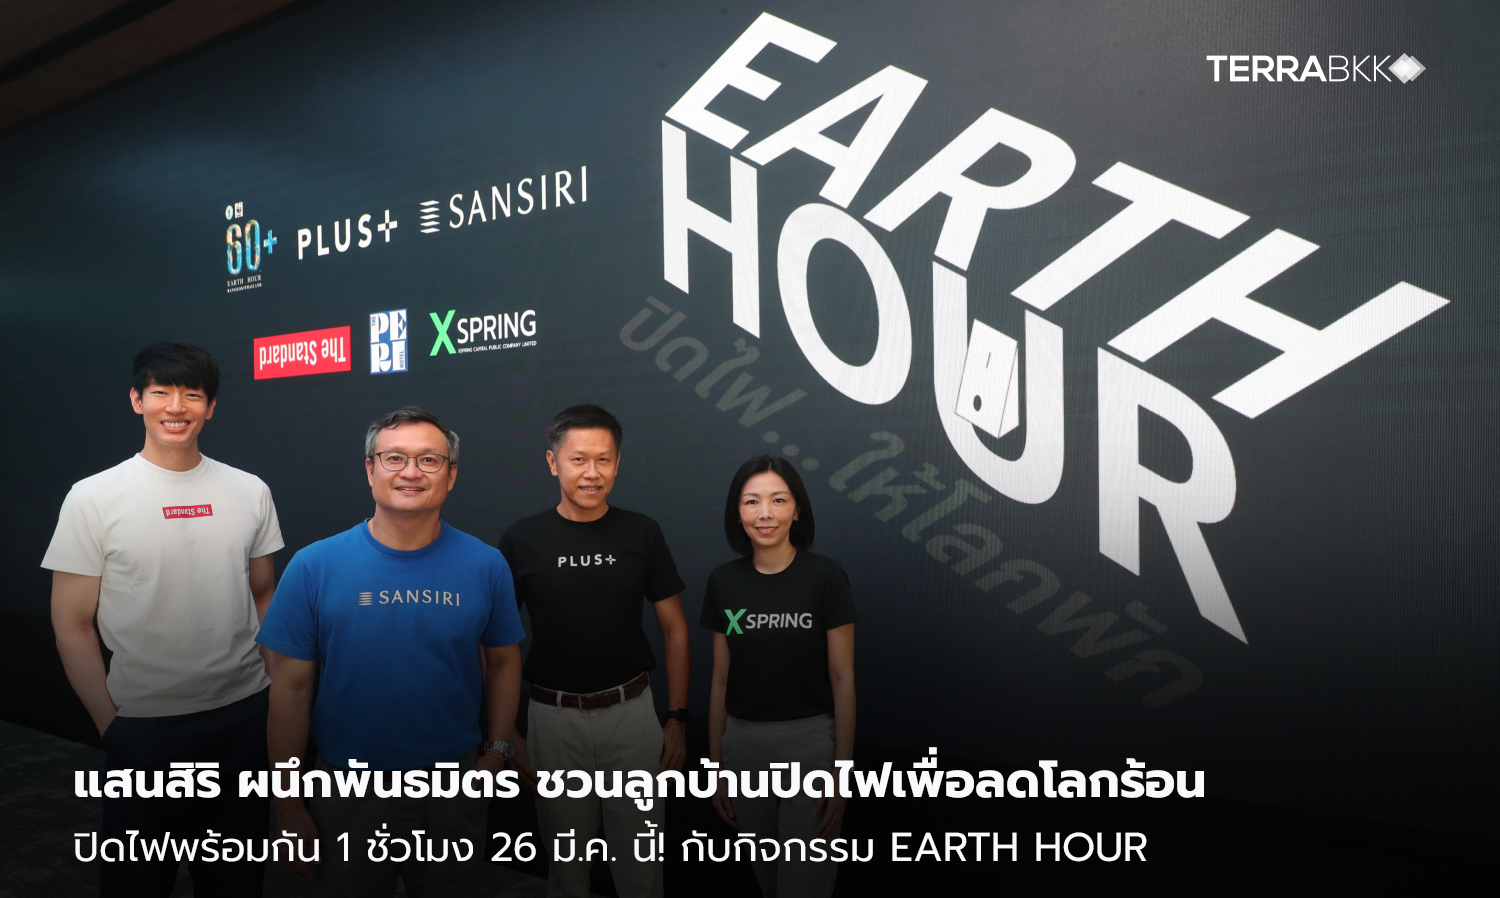 แสนสิริ ผนึกพันธมิตร ชวนลูกบ้านปิดไฟเพื่อลดโลกร้อน  ปิดไฟพร้อมกัน 1 ชั่วโมง 26 มี.ค. นี้! กับกิจกรรม Earth Hour